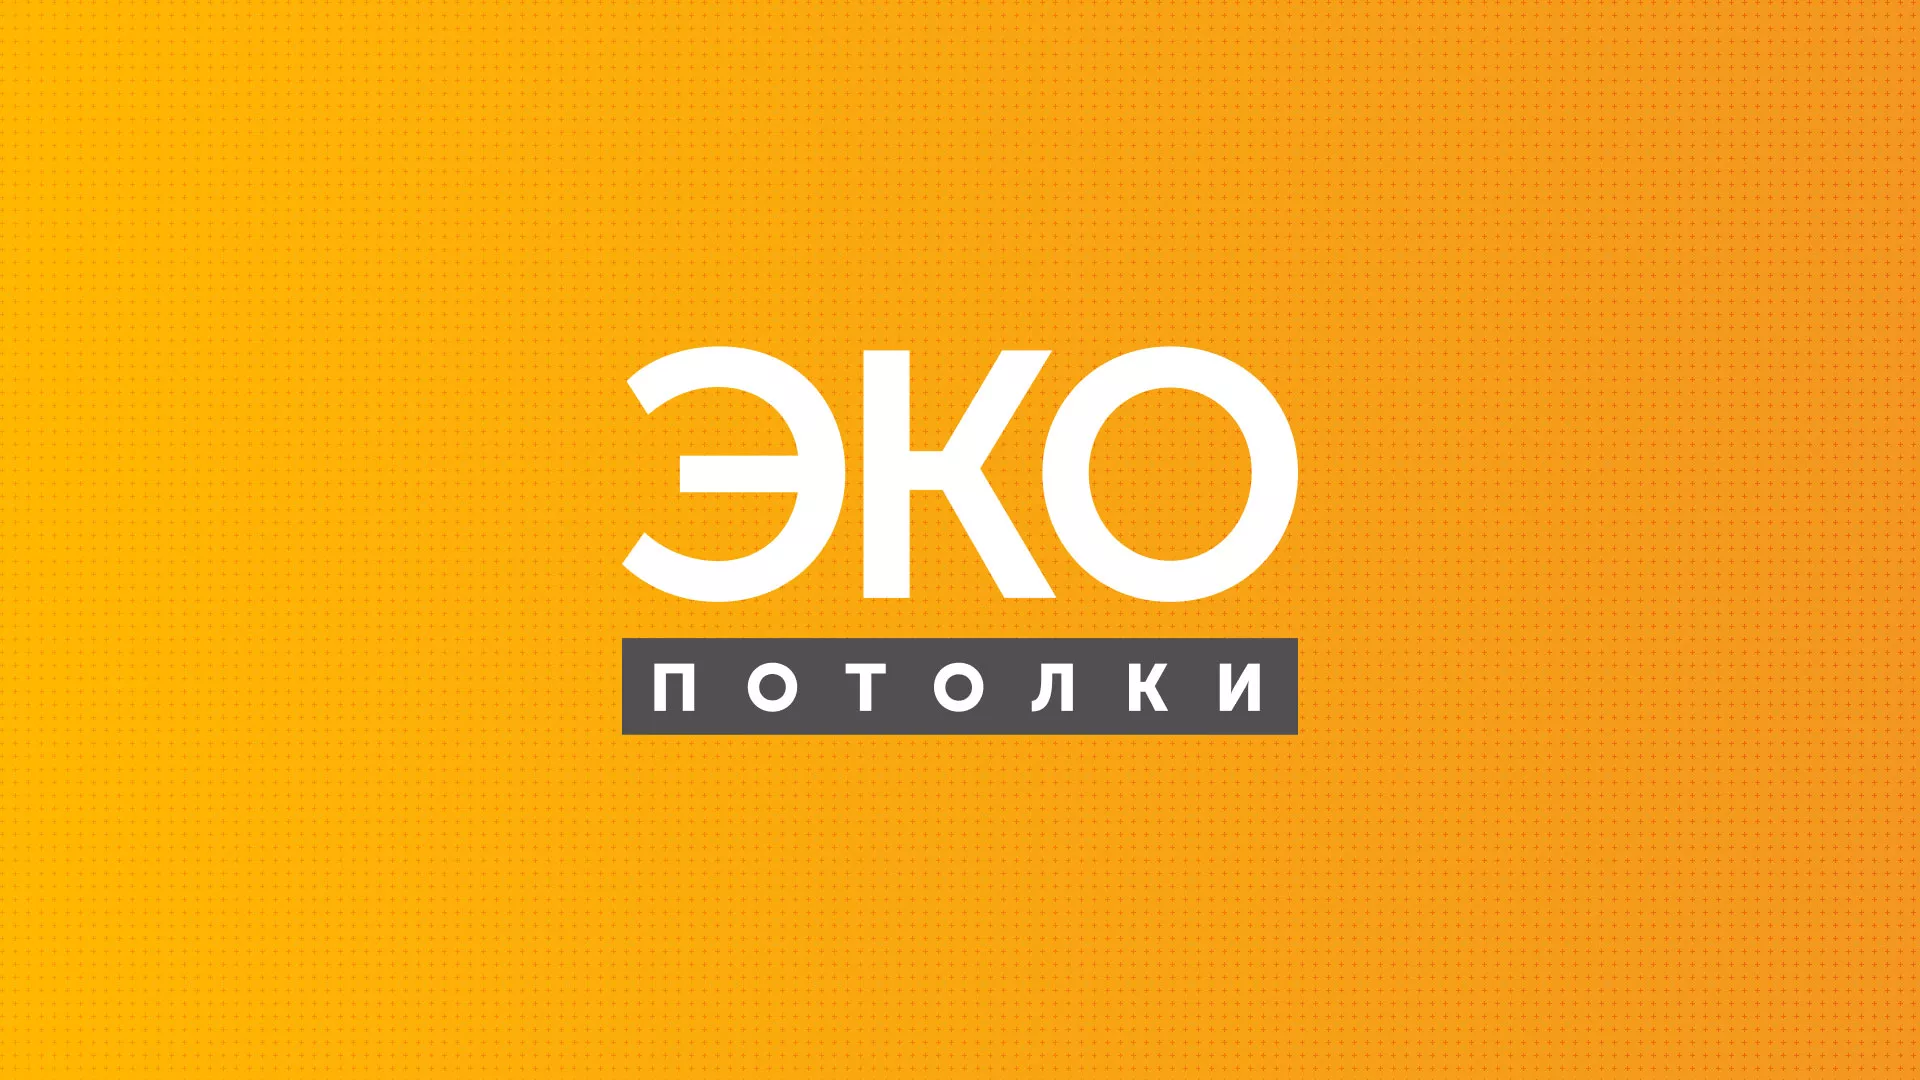 Разработка сайта по натяжным потолкам «Эко Потолки» в Гурьевске